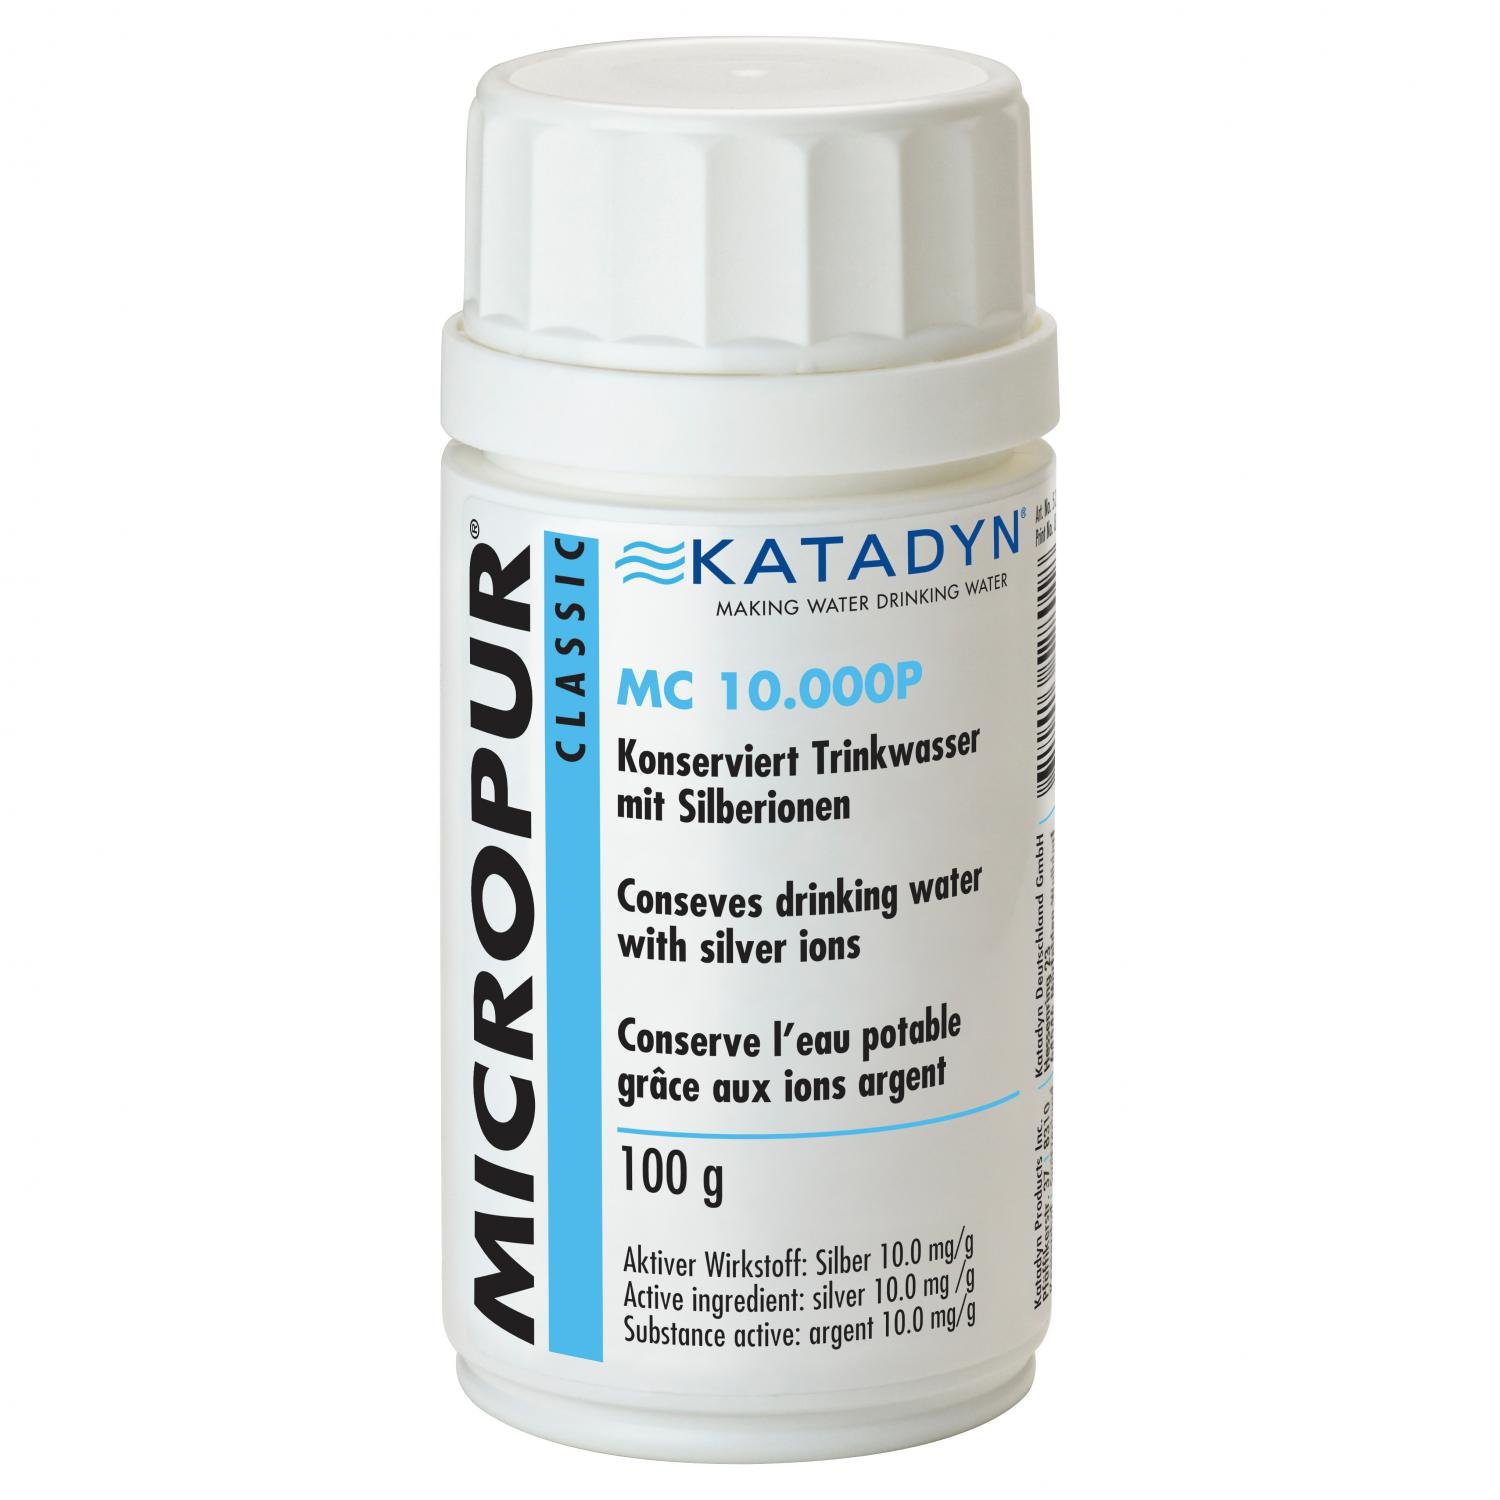 Katadyn Micropur Classic MC 10.000P Pulver Wasserentkeimung 100 g